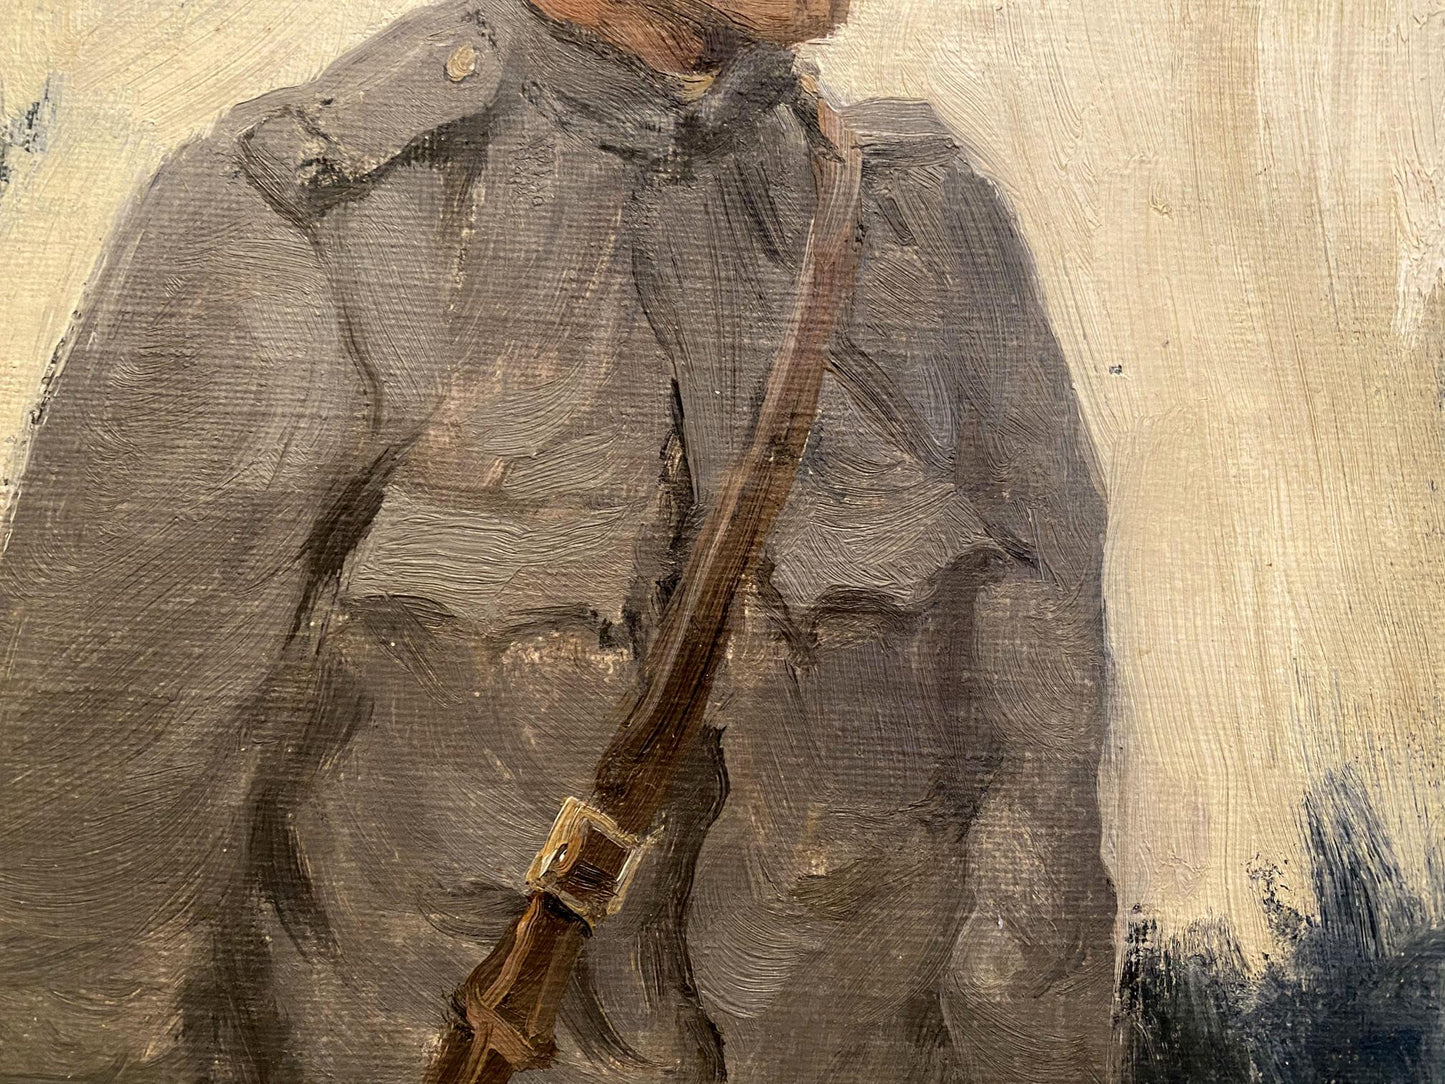 Oil painting Hungarian soldier Ivan Alekseevich Vladimirov